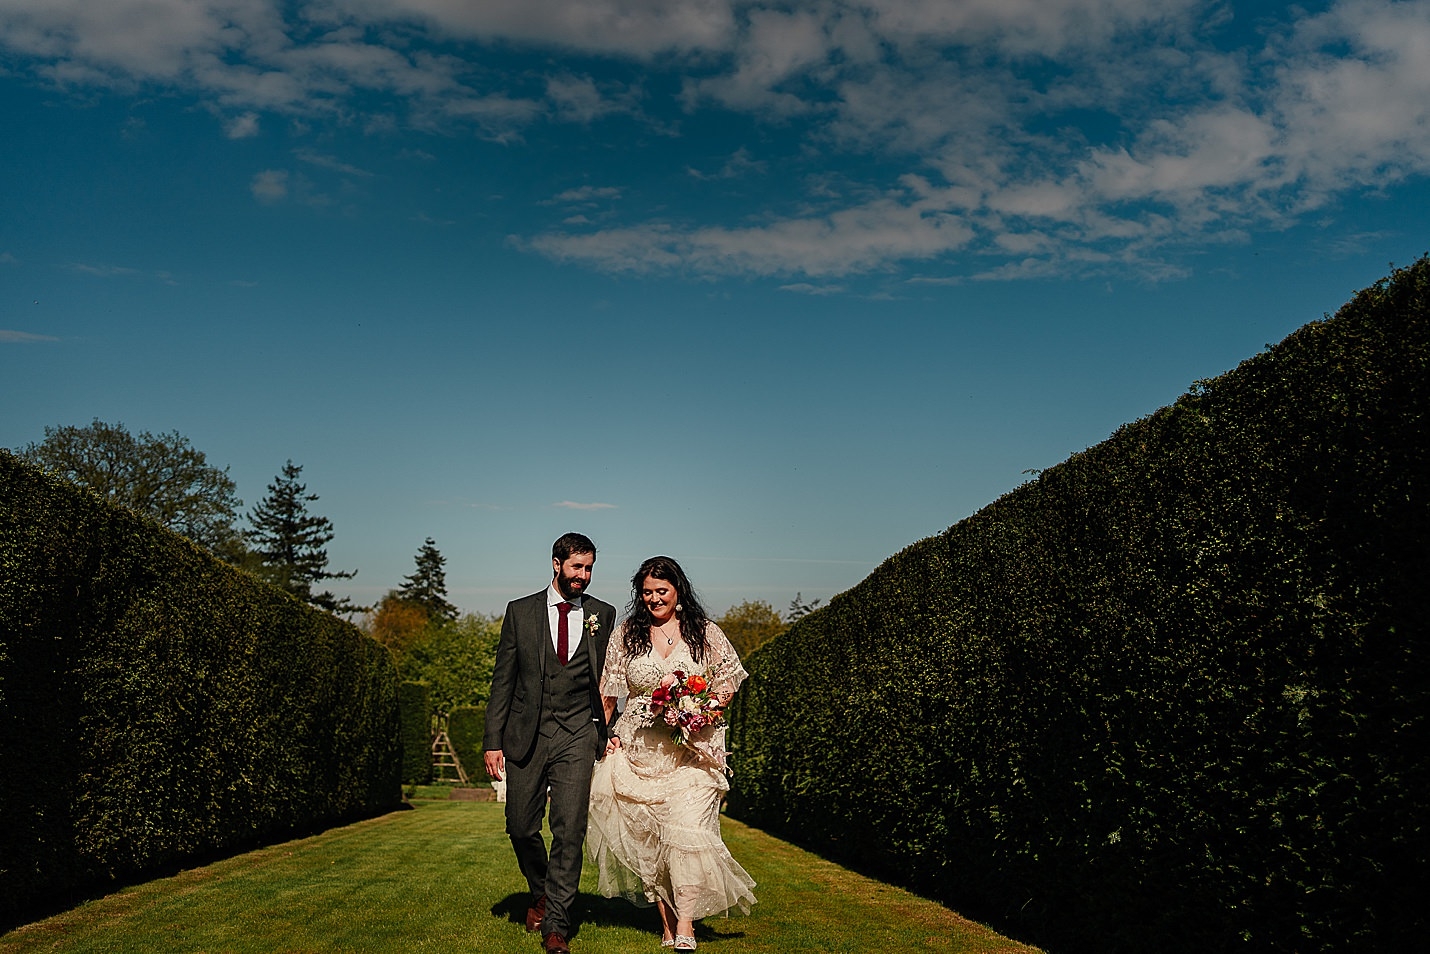 Les mariés viennent de se marier marchant vers la caméra dans un jardin clos vert avec un ciel bleu le jour ensoleillé château de tambour photographie fotomaki de mariage